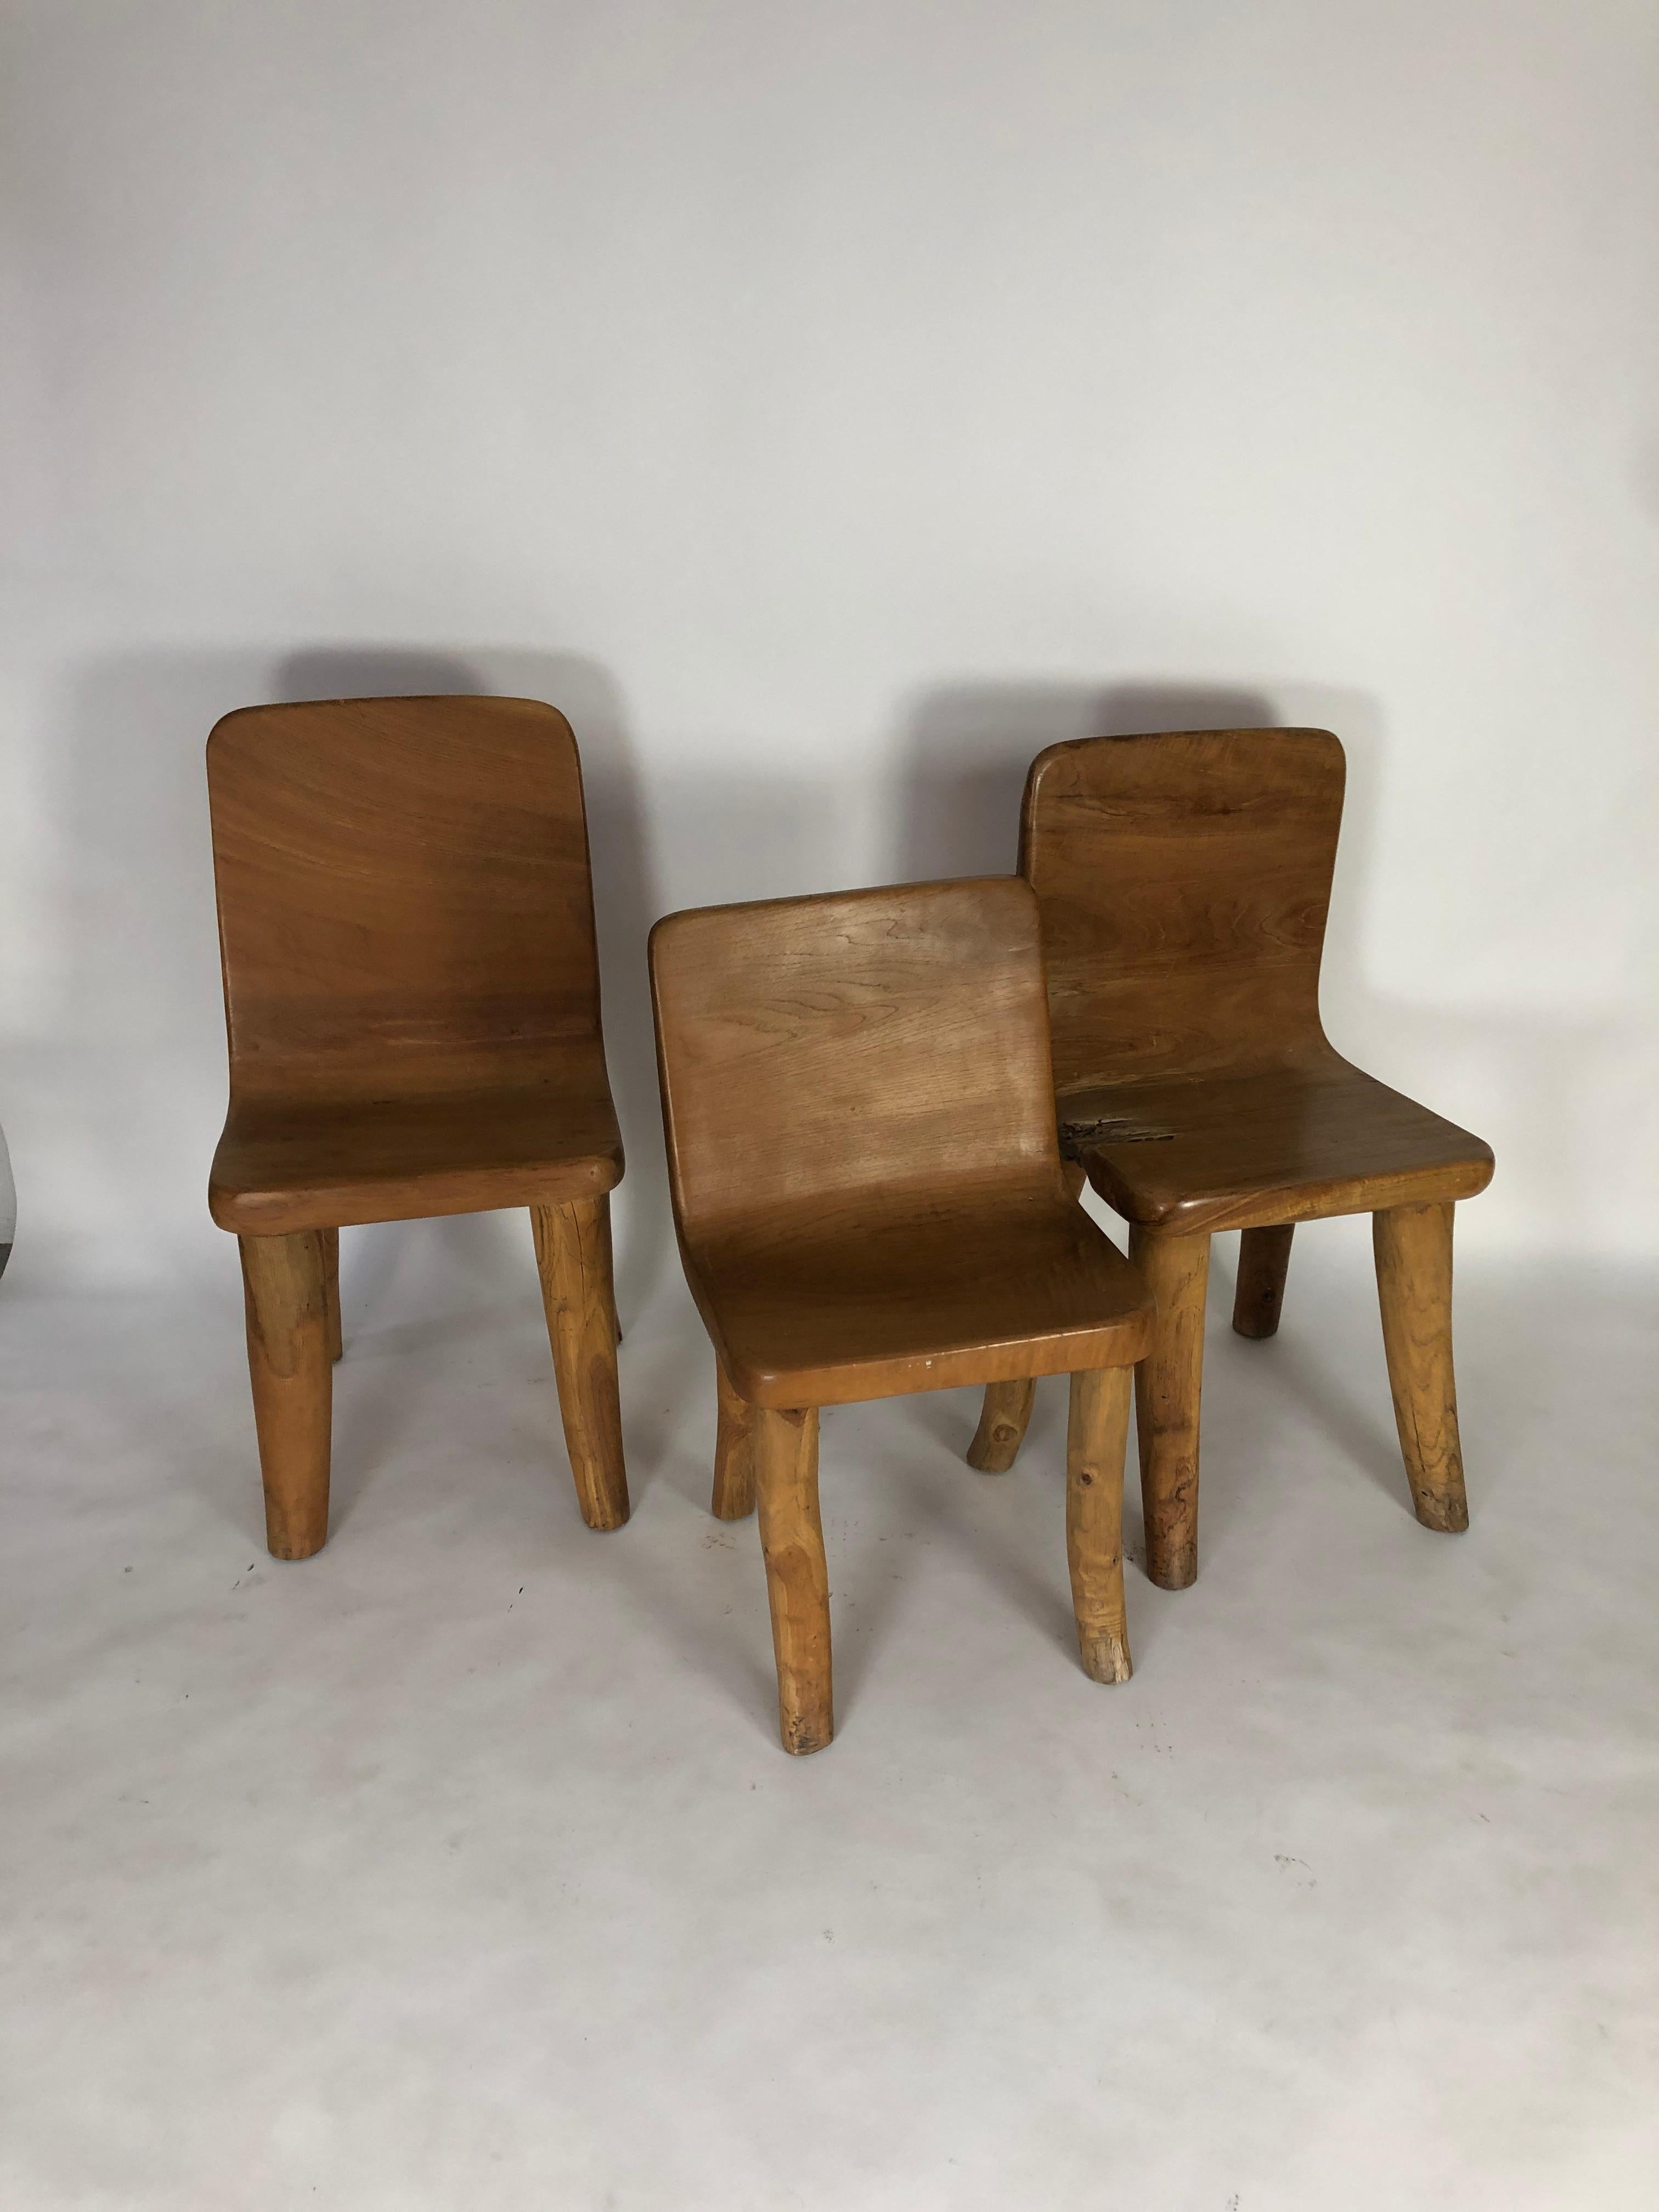 Unique Carved Teak Chair #1 2